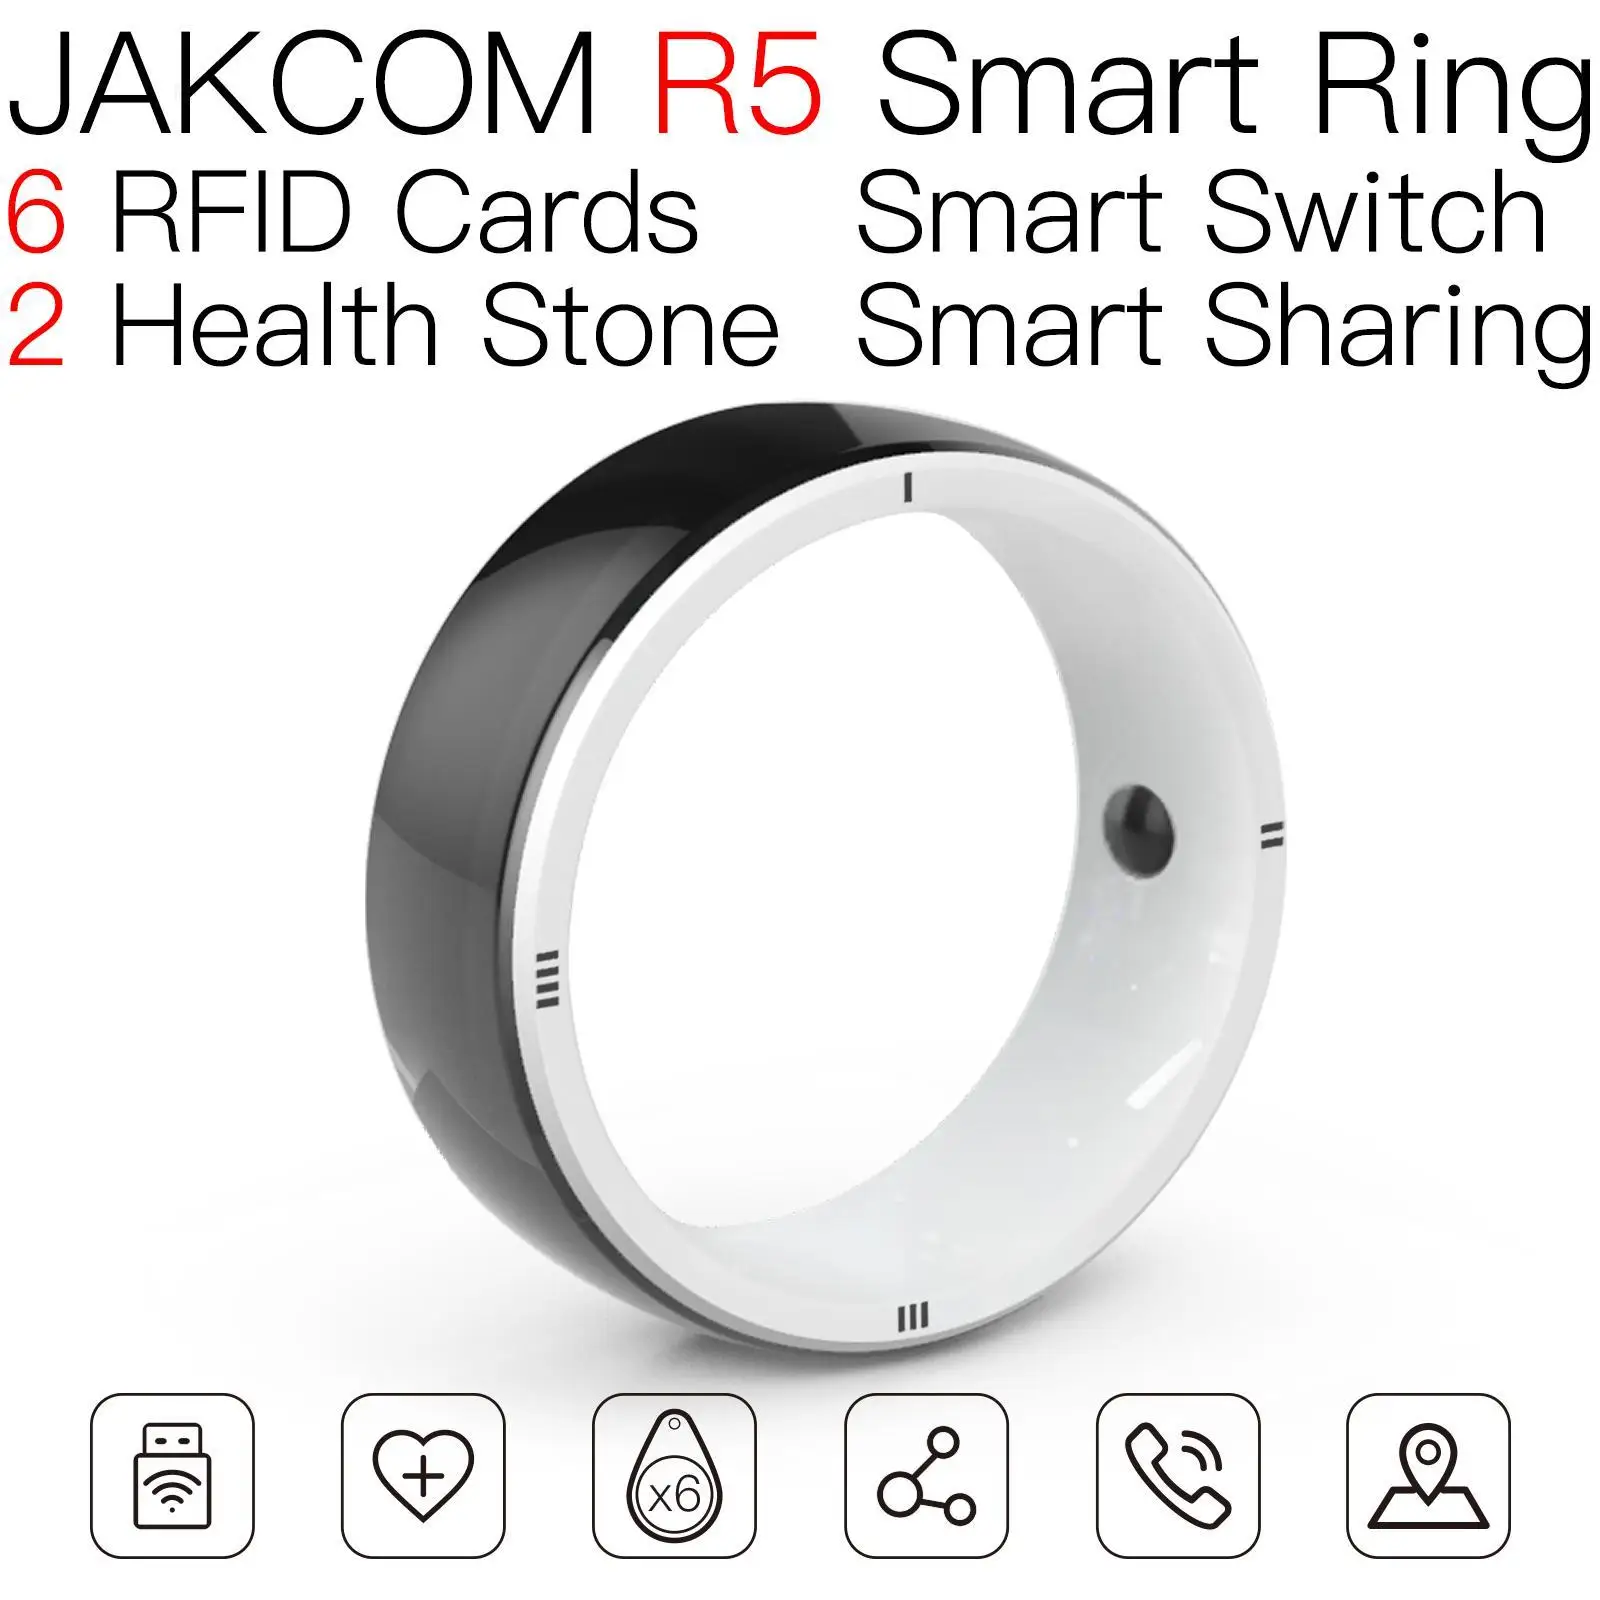 

Умное кольцо JAKCOM R5, новее, чем mfc, бумажная бирка, монета r4i, обновленная модель 125 кГц, стикер брелок для ключей, прерыватель карт dcf887, карта 4